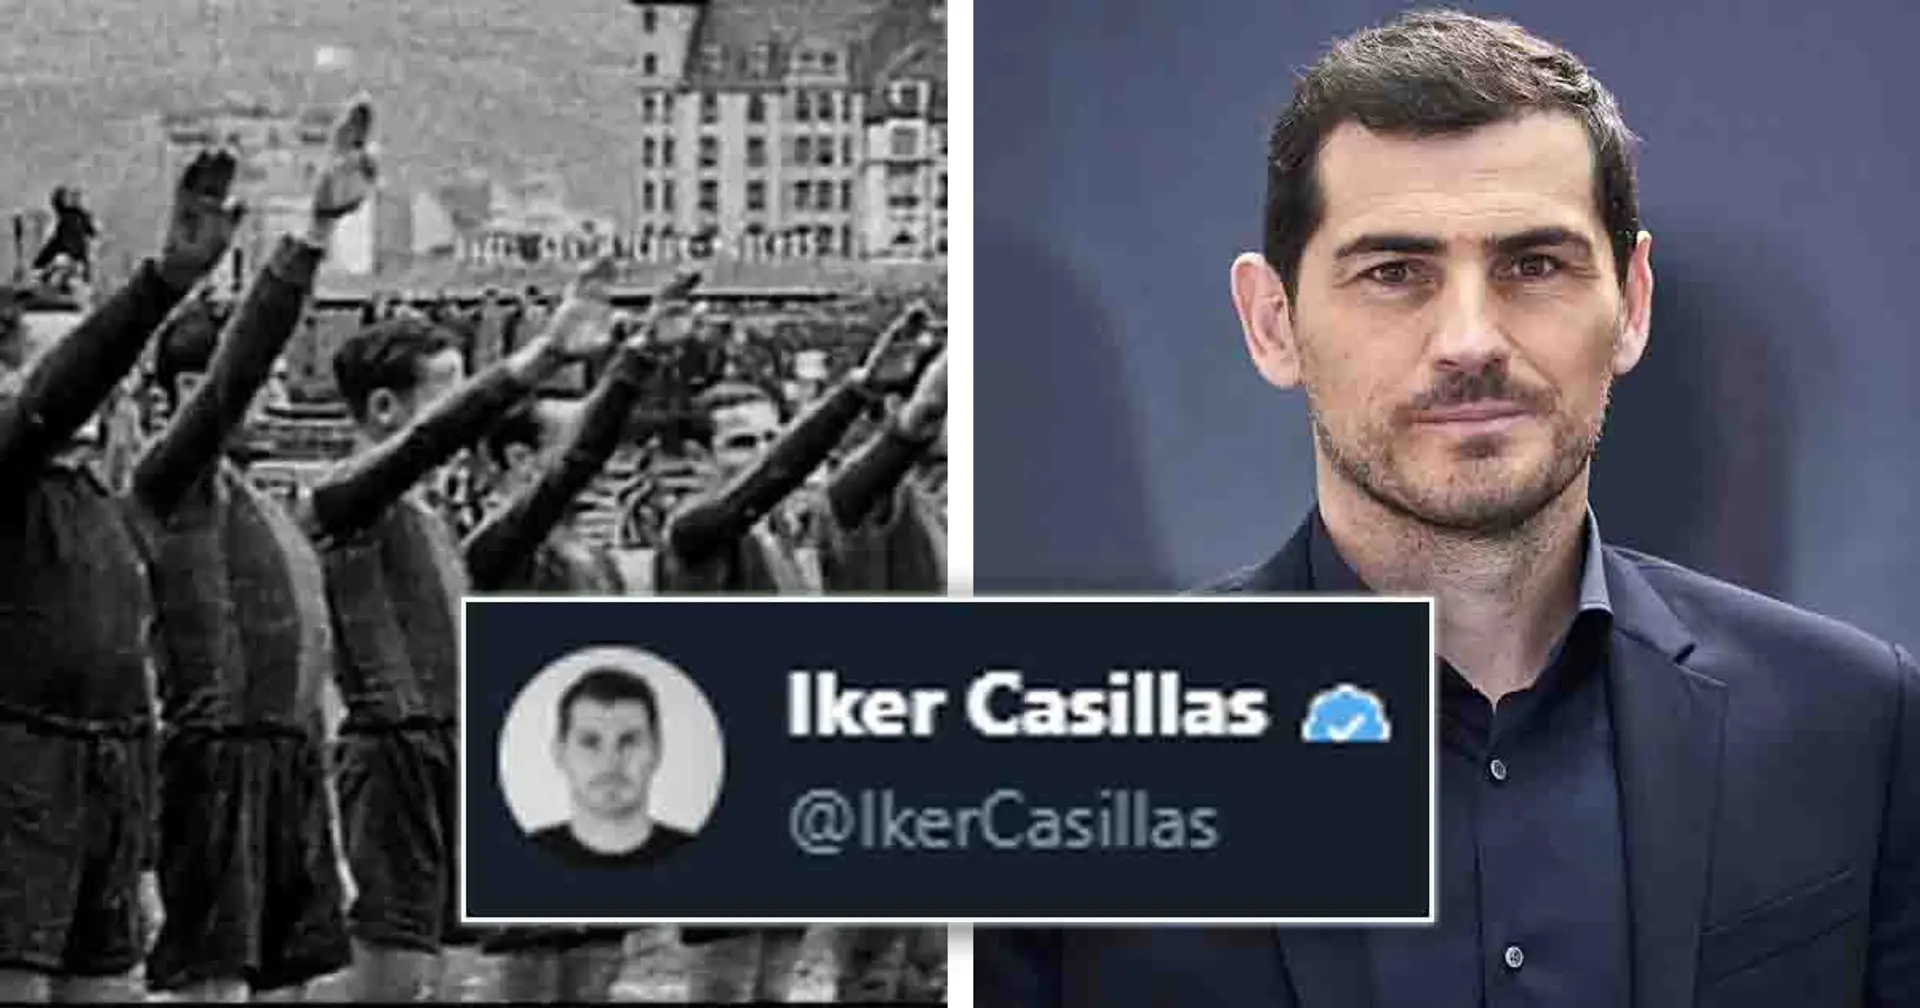 "Complètement détenu": Iker Casillas s'attaque au Barça après la vidéo de "l'équipe du régime" de Madrid